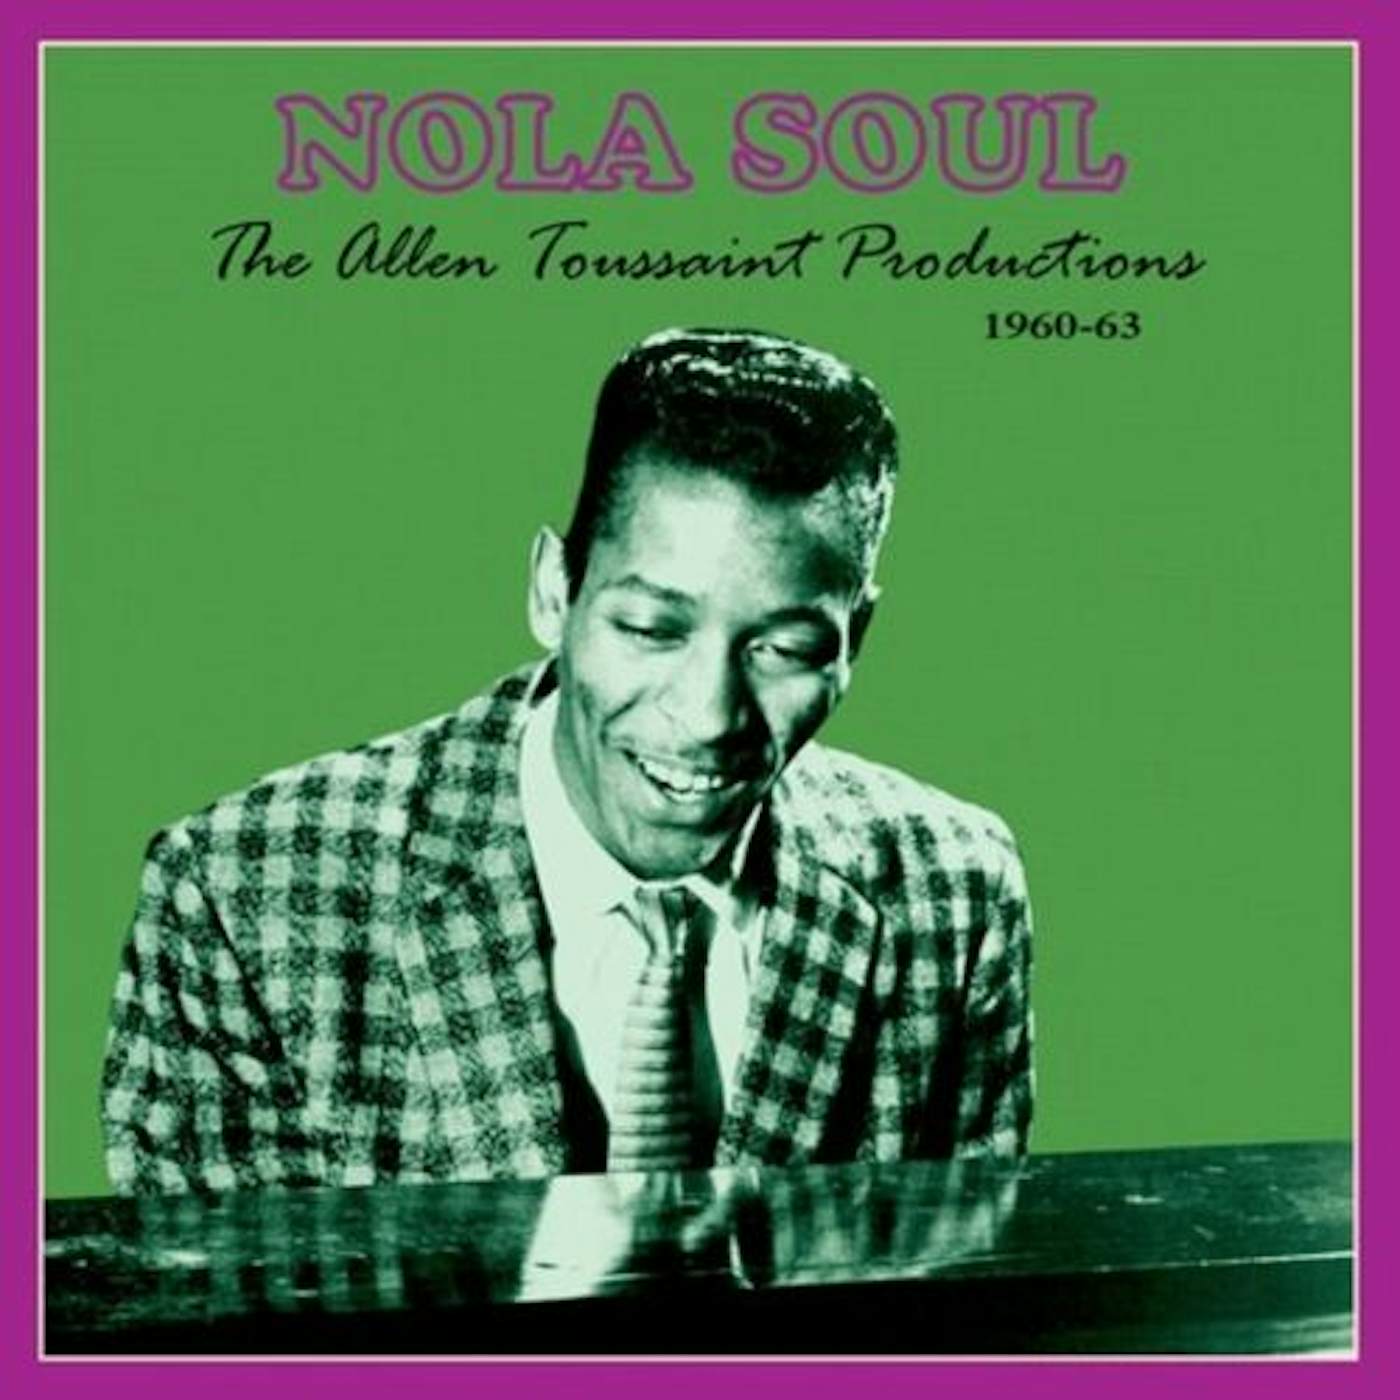 Various Artists NOLA SOUL: THE ALLEN TOUSSAINT PRODUCTIONS 1960-63 Vinyl Record